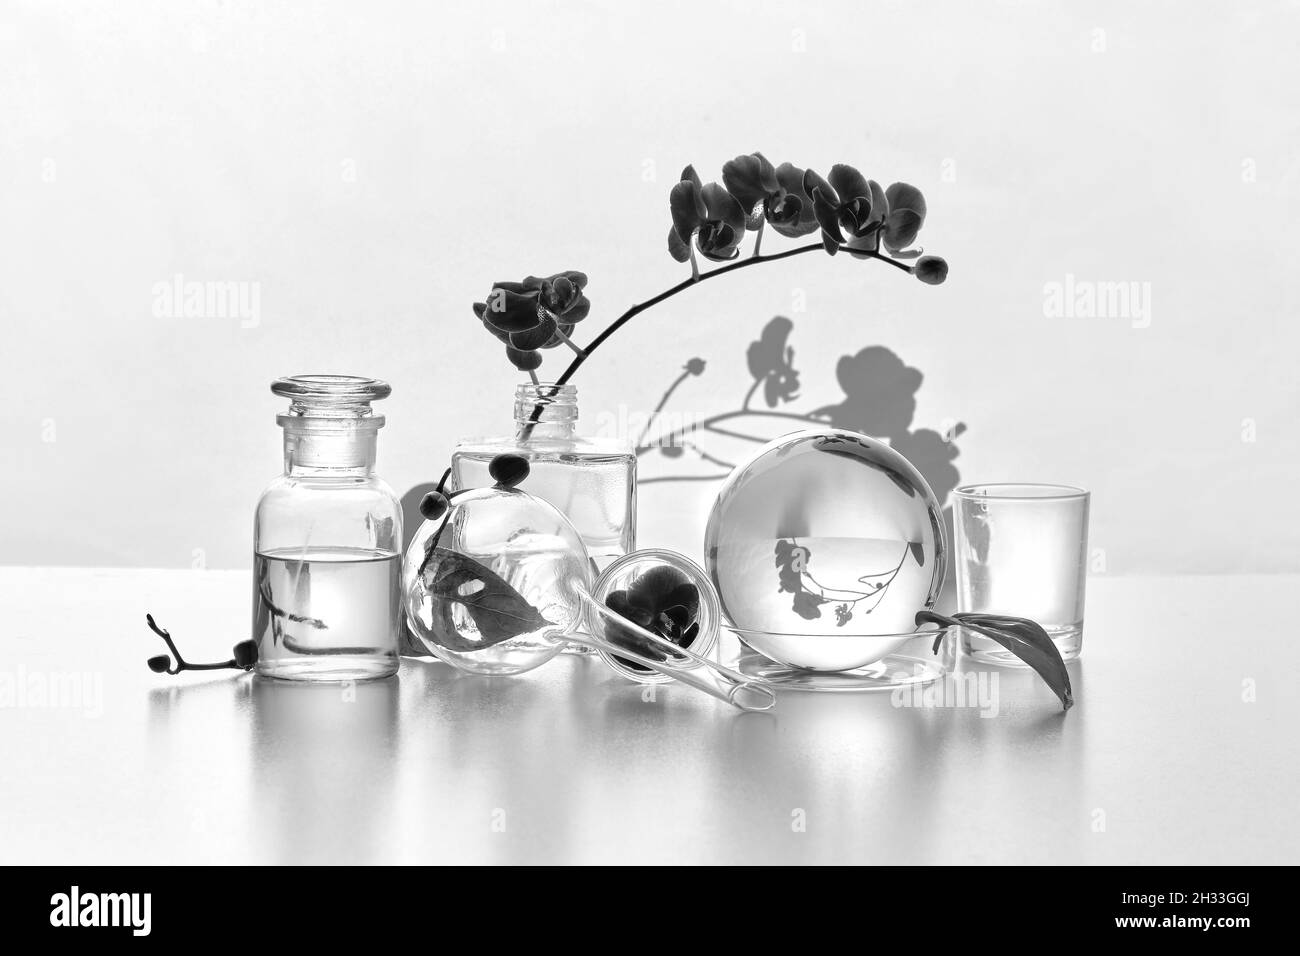 Laboratoire naturel en noir et blanc.Arrangement floral abstrait avec des feuilles de monstère exotiques dans des vases en verre transparent, des bocaux, des flacons.Réflexions Banque D'Images